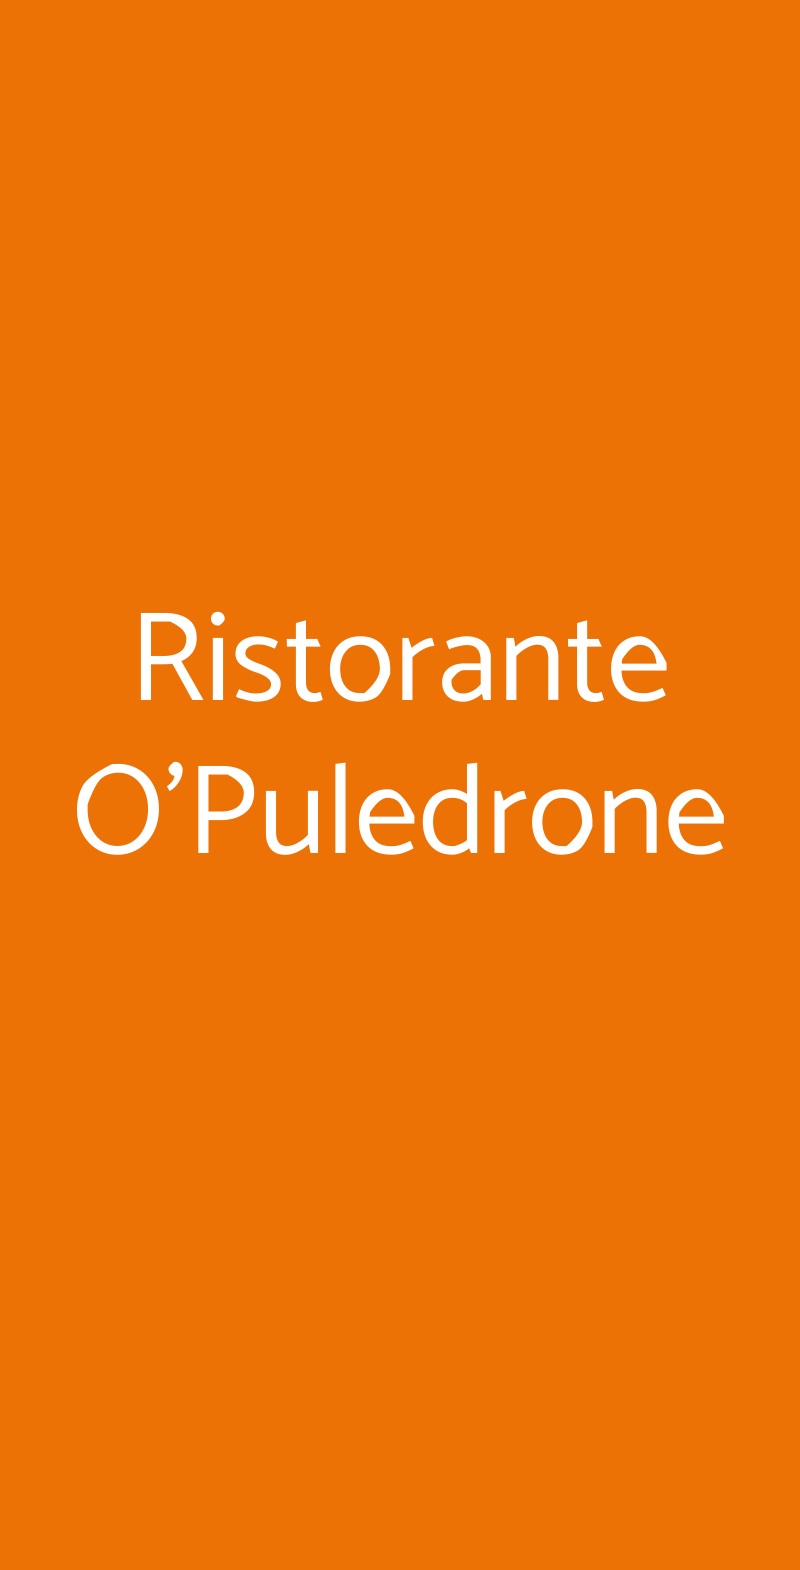 Ristorante O'Puledrone Sorrento menù 1 pagina